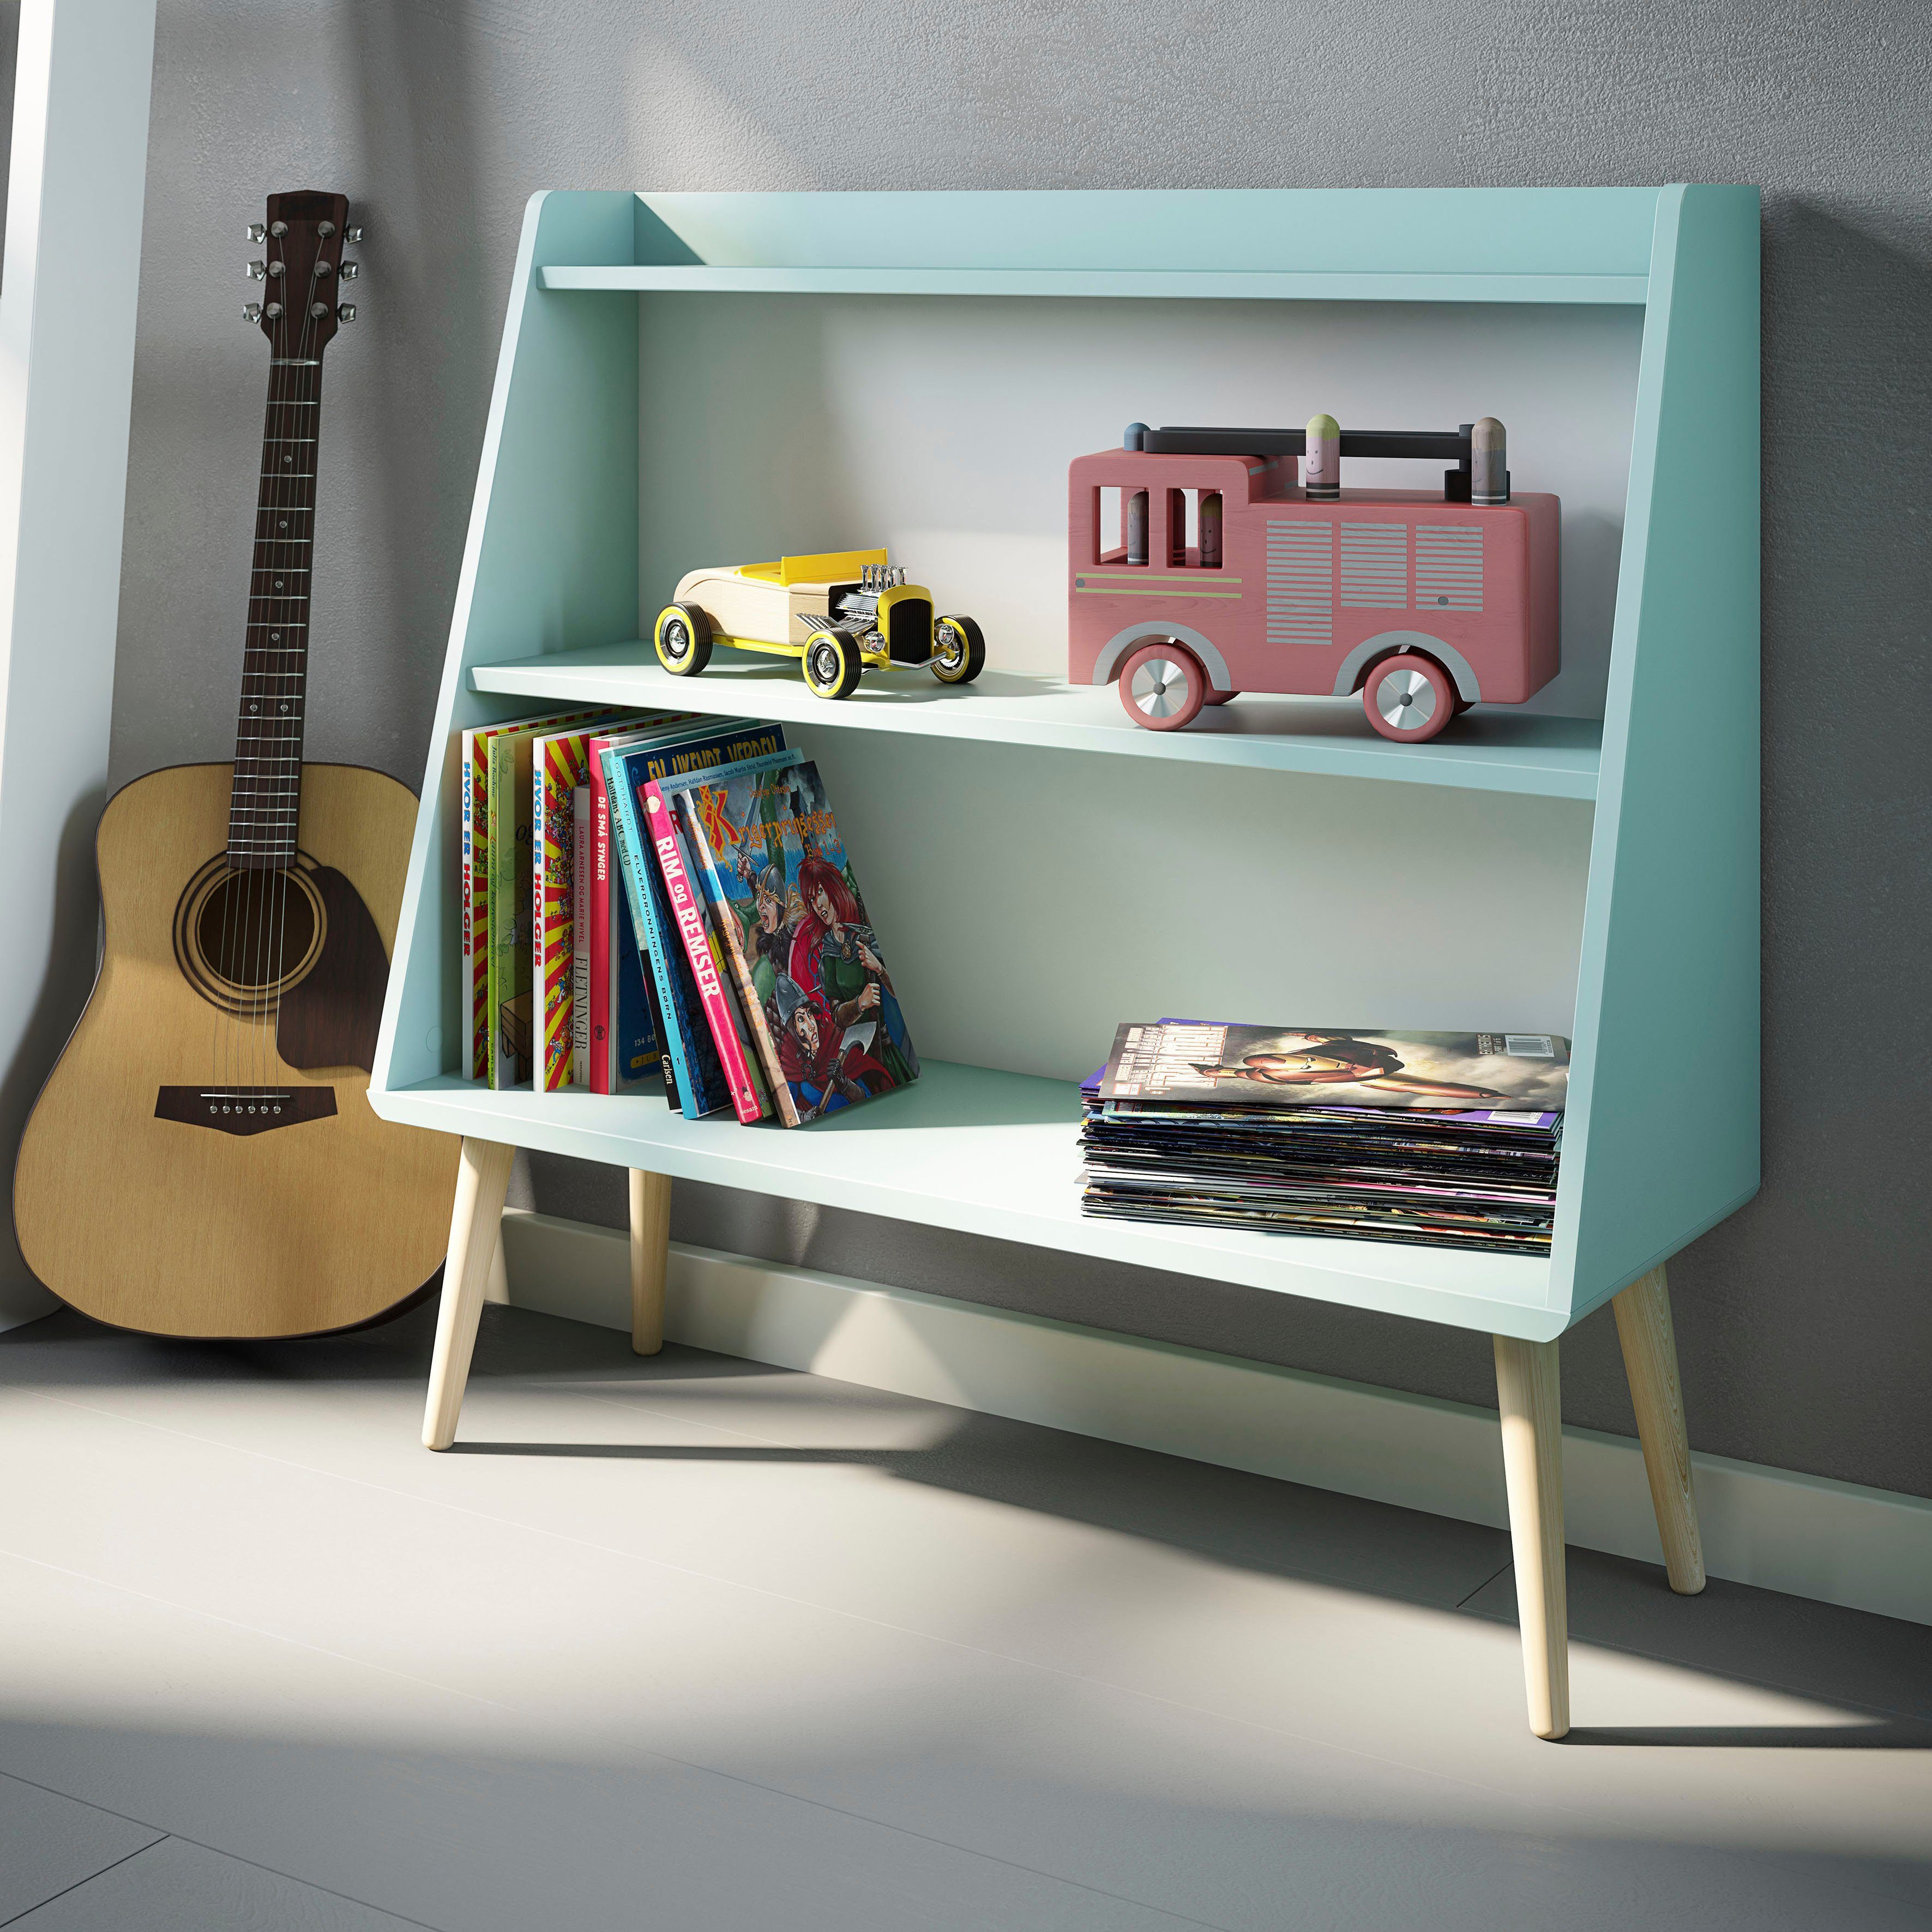 andas Bücherregal Cool Kinder- Mint in Jugendzimmer und Gaia, Design skandinavischem